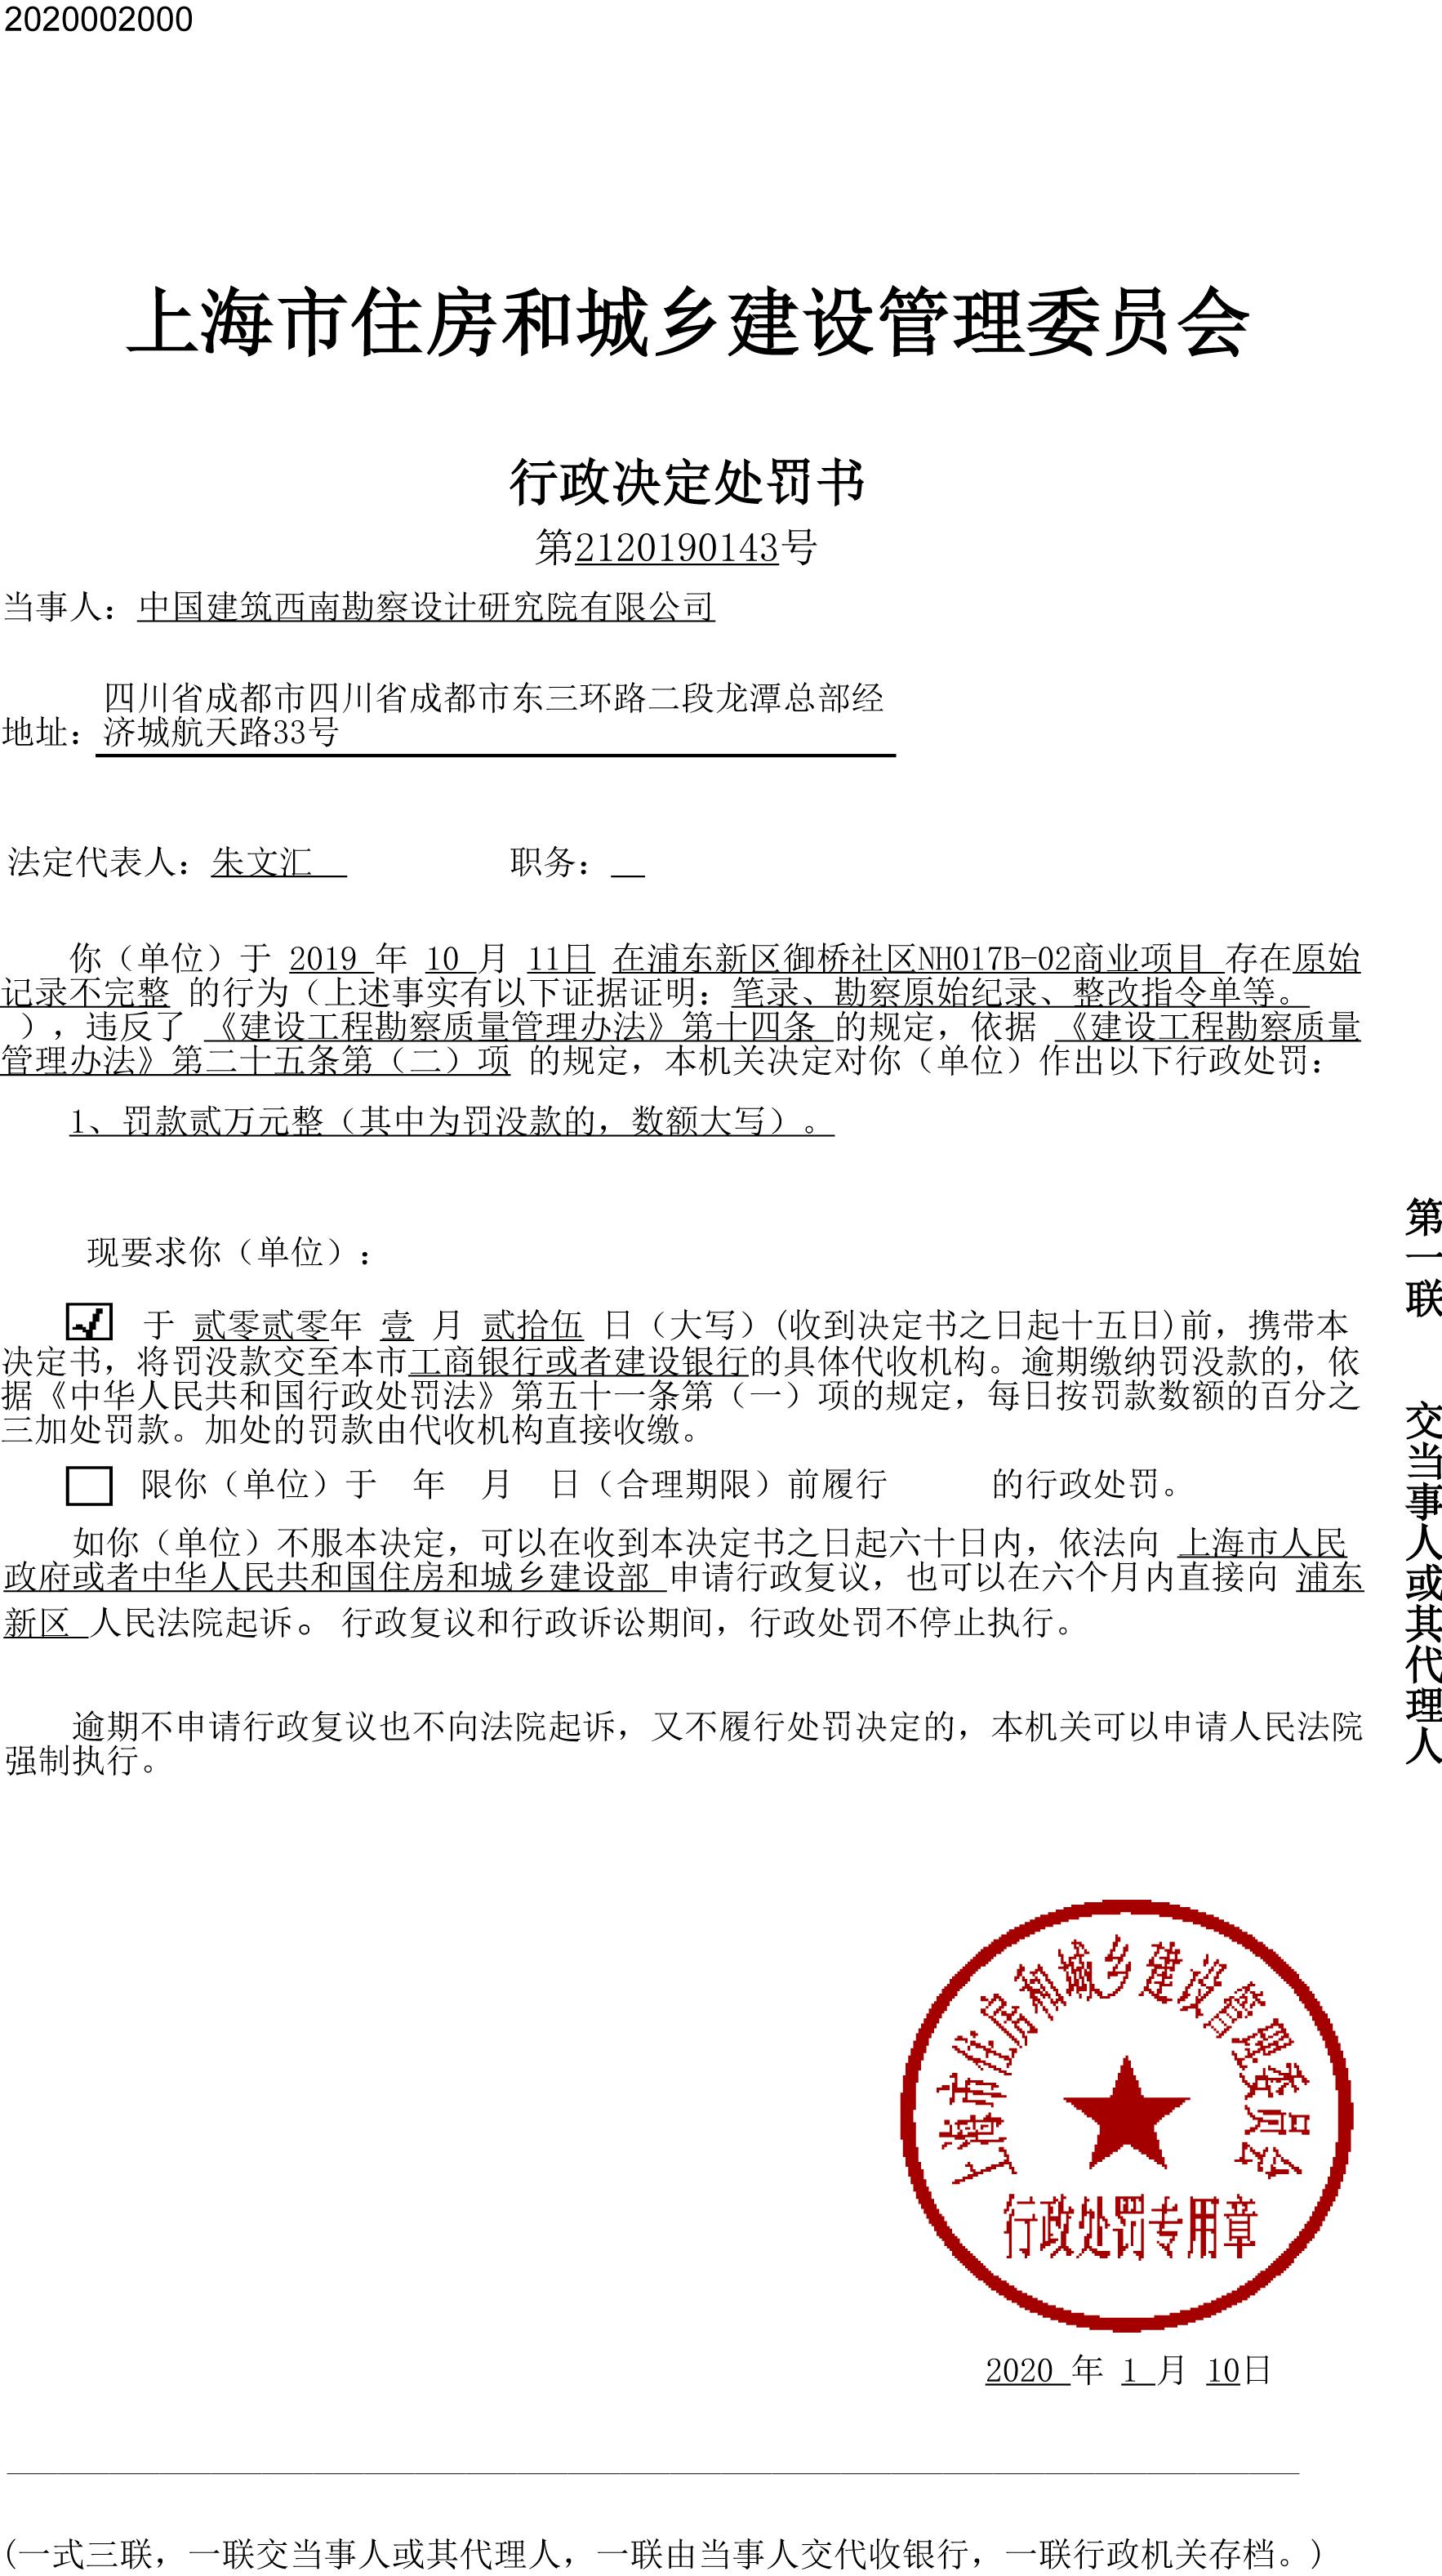 中国建筑西南勘察设计研究院有限公司违反建设工程勘察质量管理相关规定遭罚